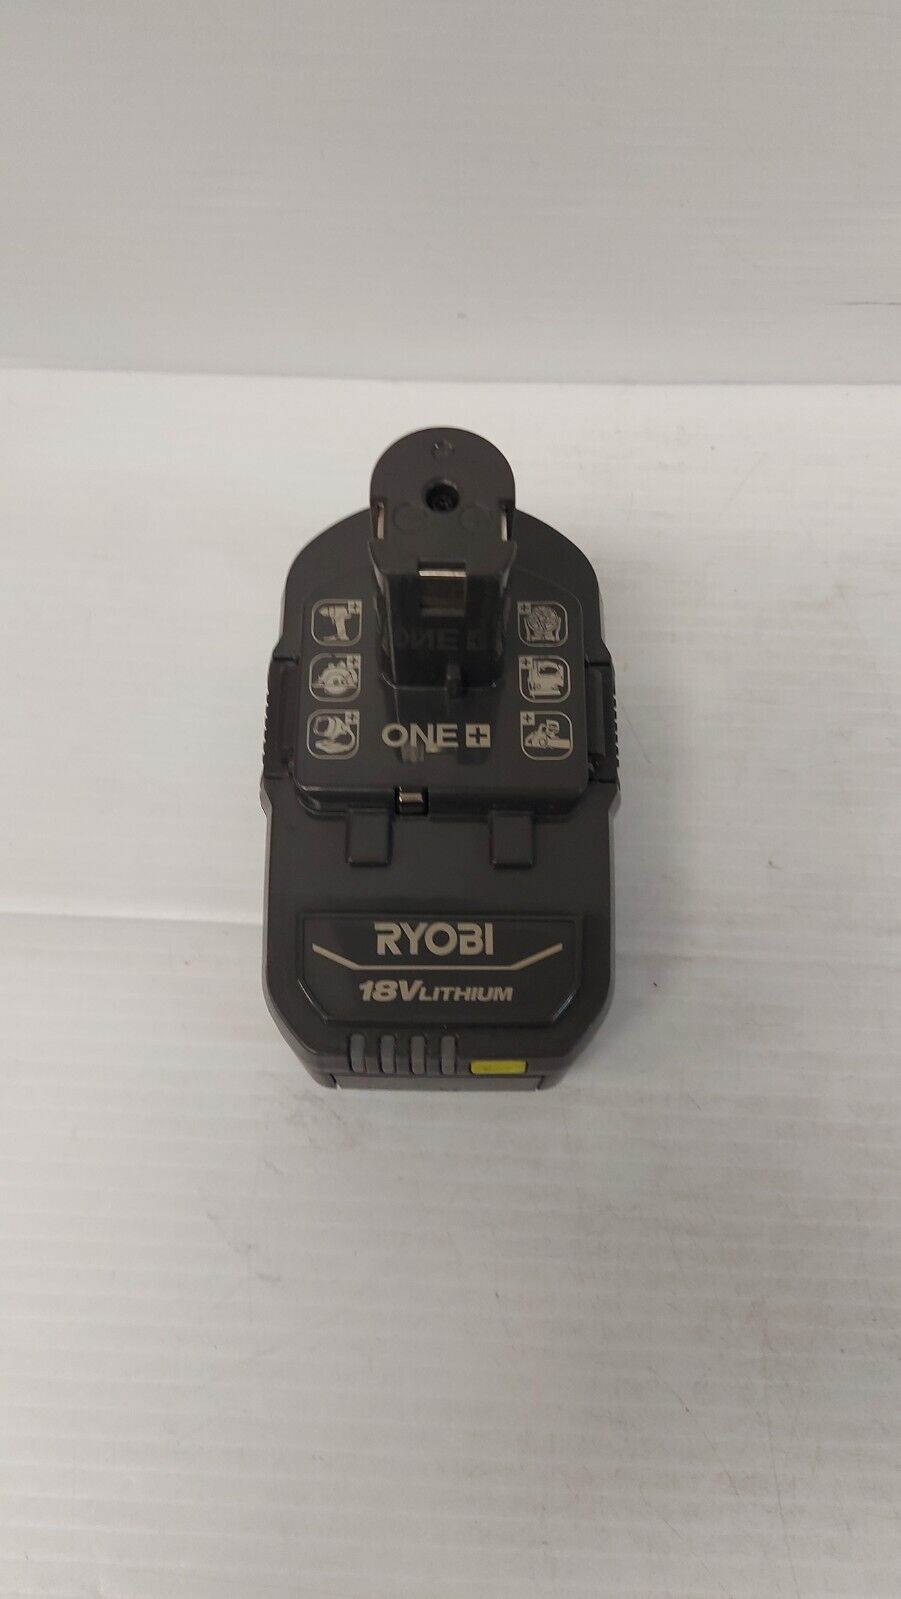 (N80642-1) Ryobi P21012VNM Leaf Blower with Battery